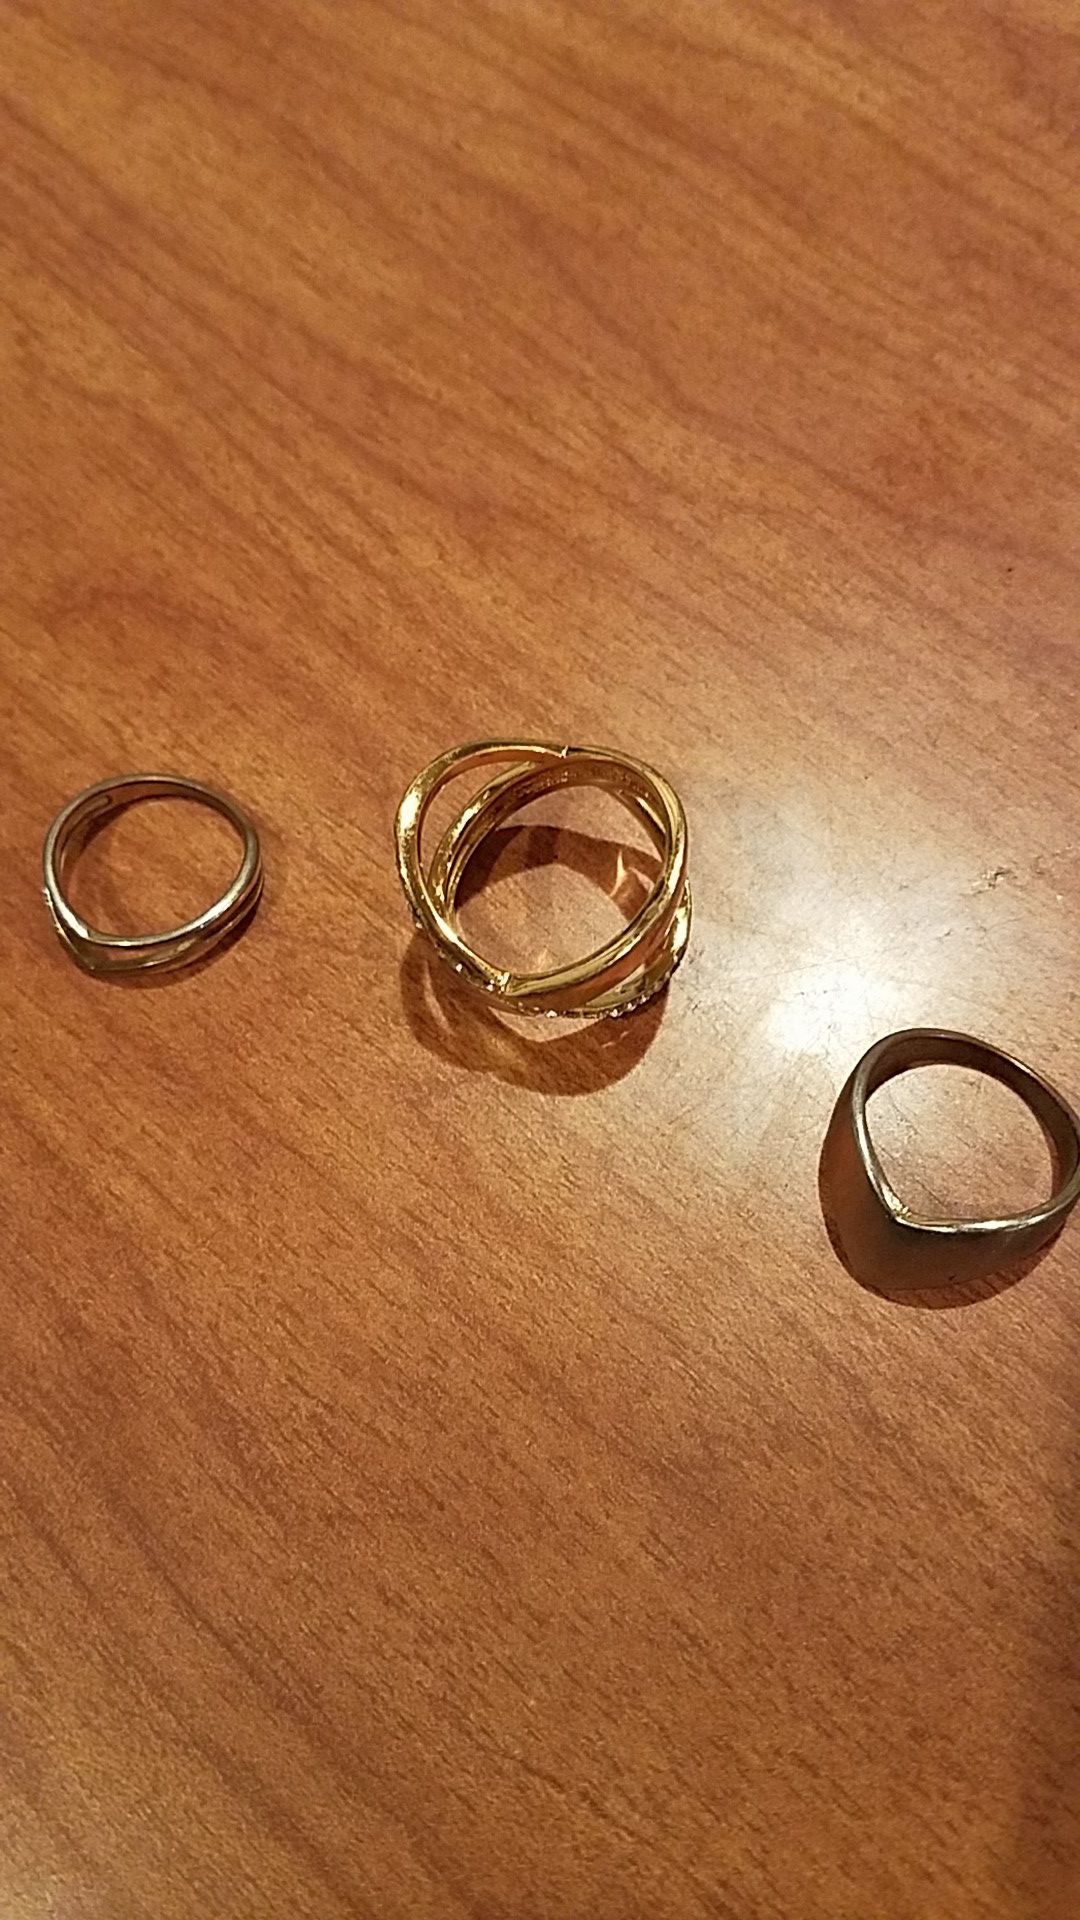 Rings $1 each